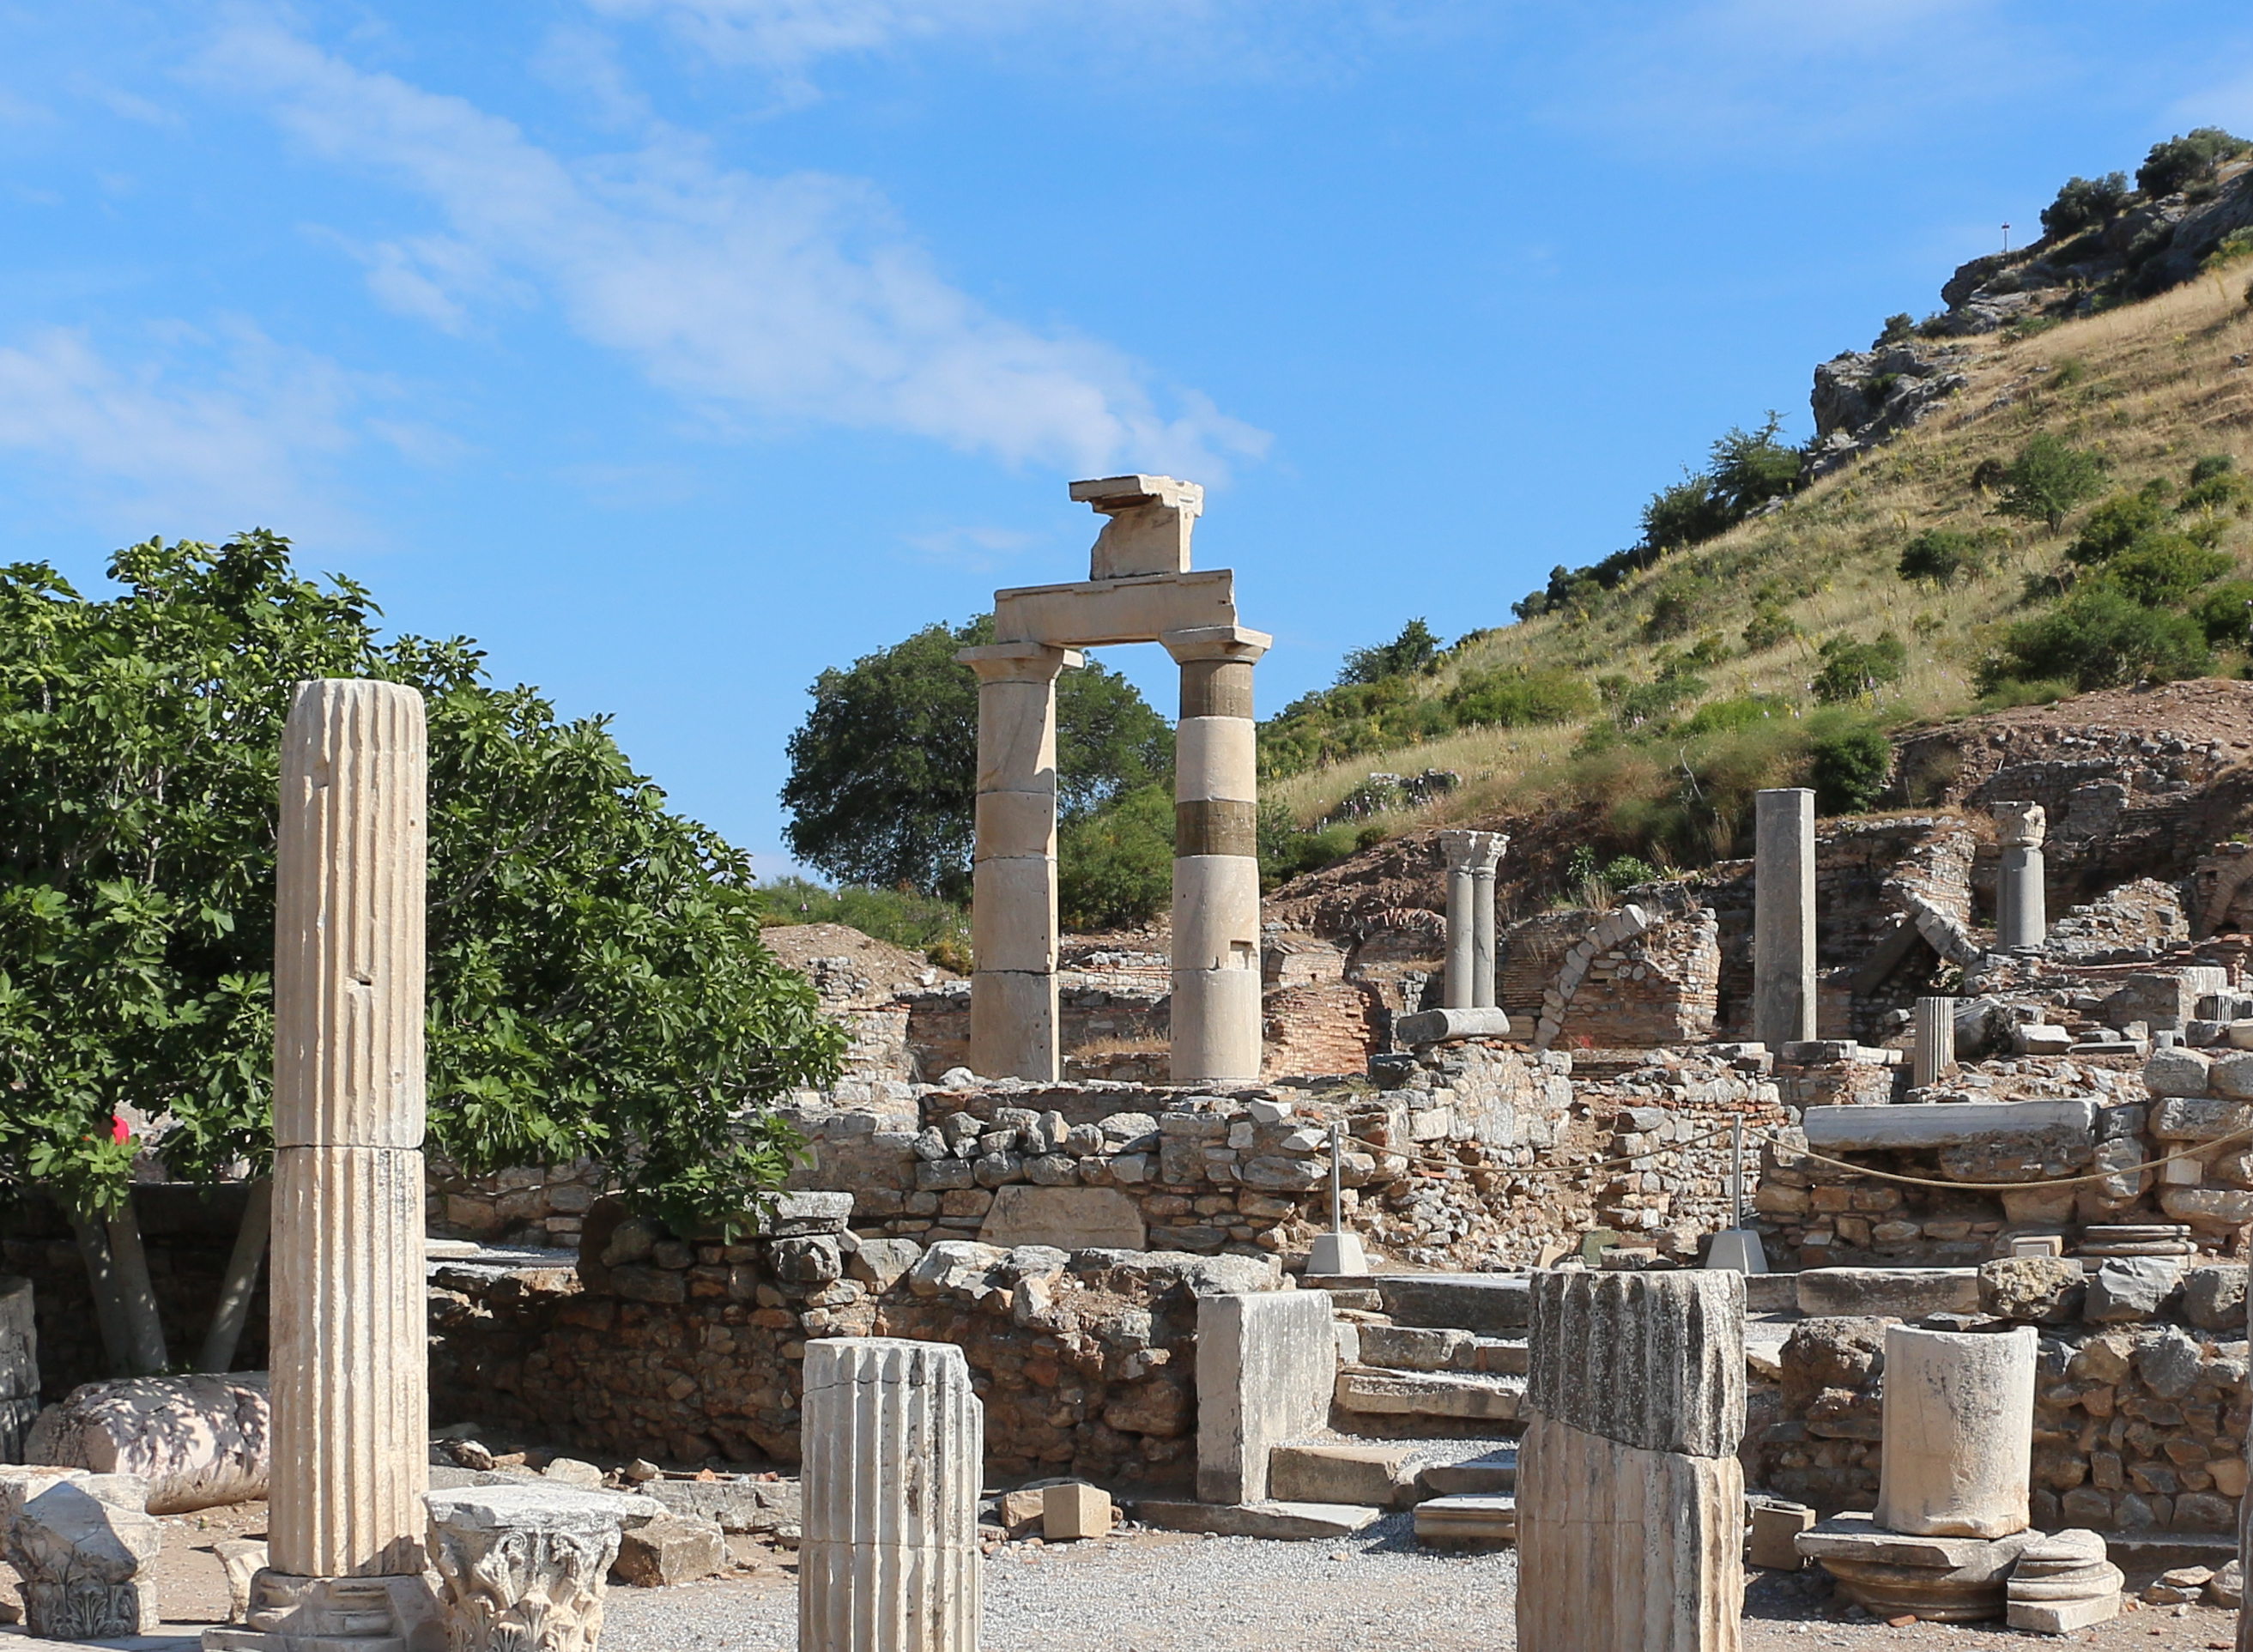 Ephesus - Prytaneion